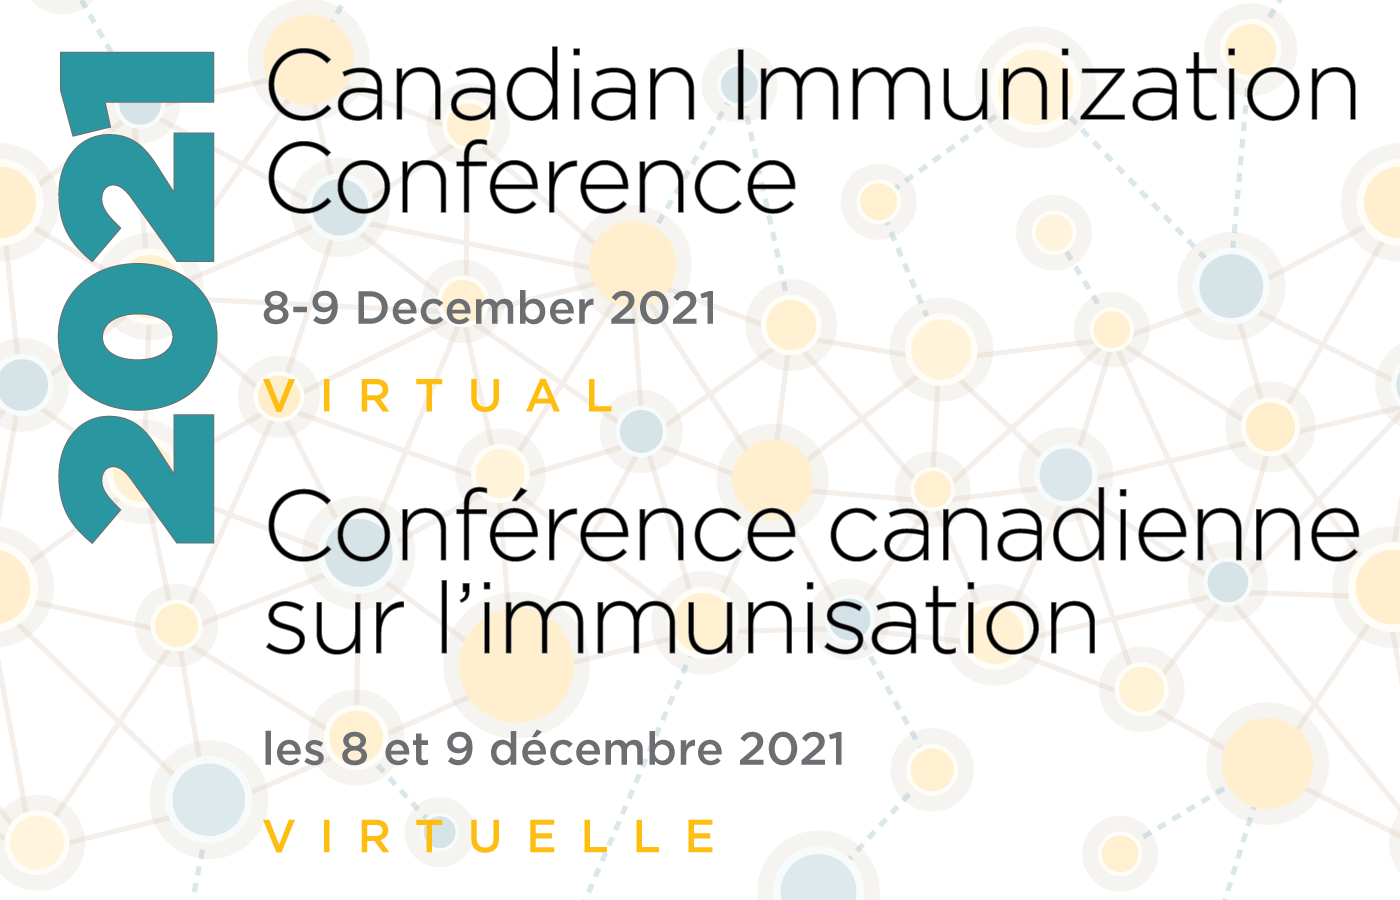 Canadian Immunization Conference 2021 Virtual CHIMA